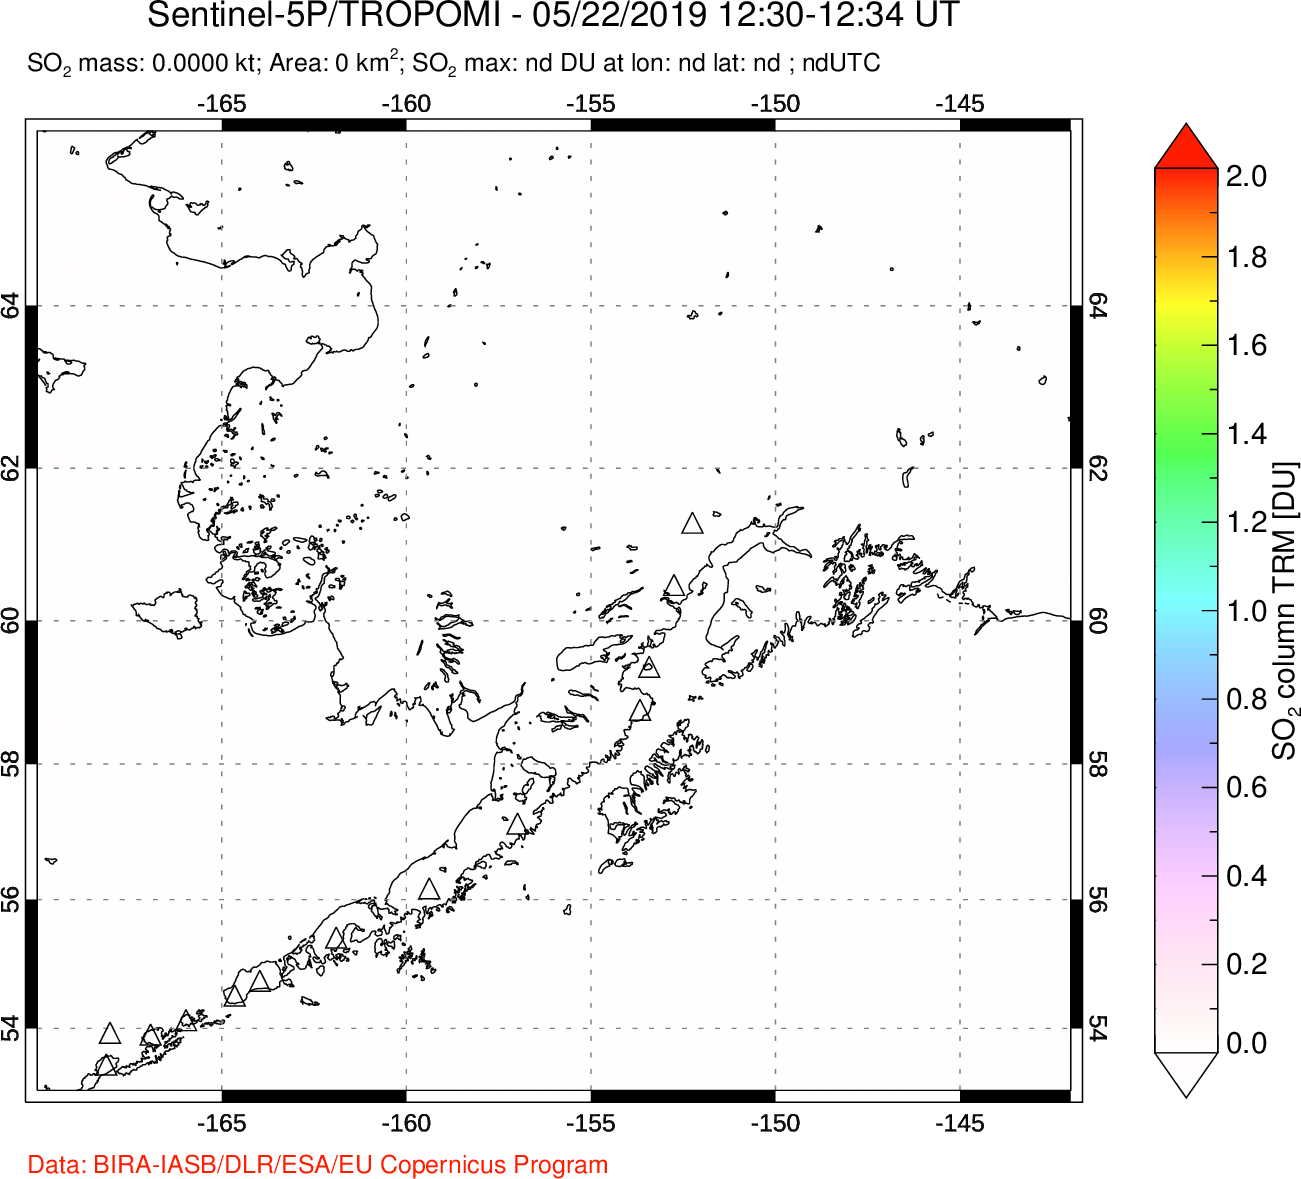 A sulfur dioxide image over Alaska, USA on May 22, 2019.